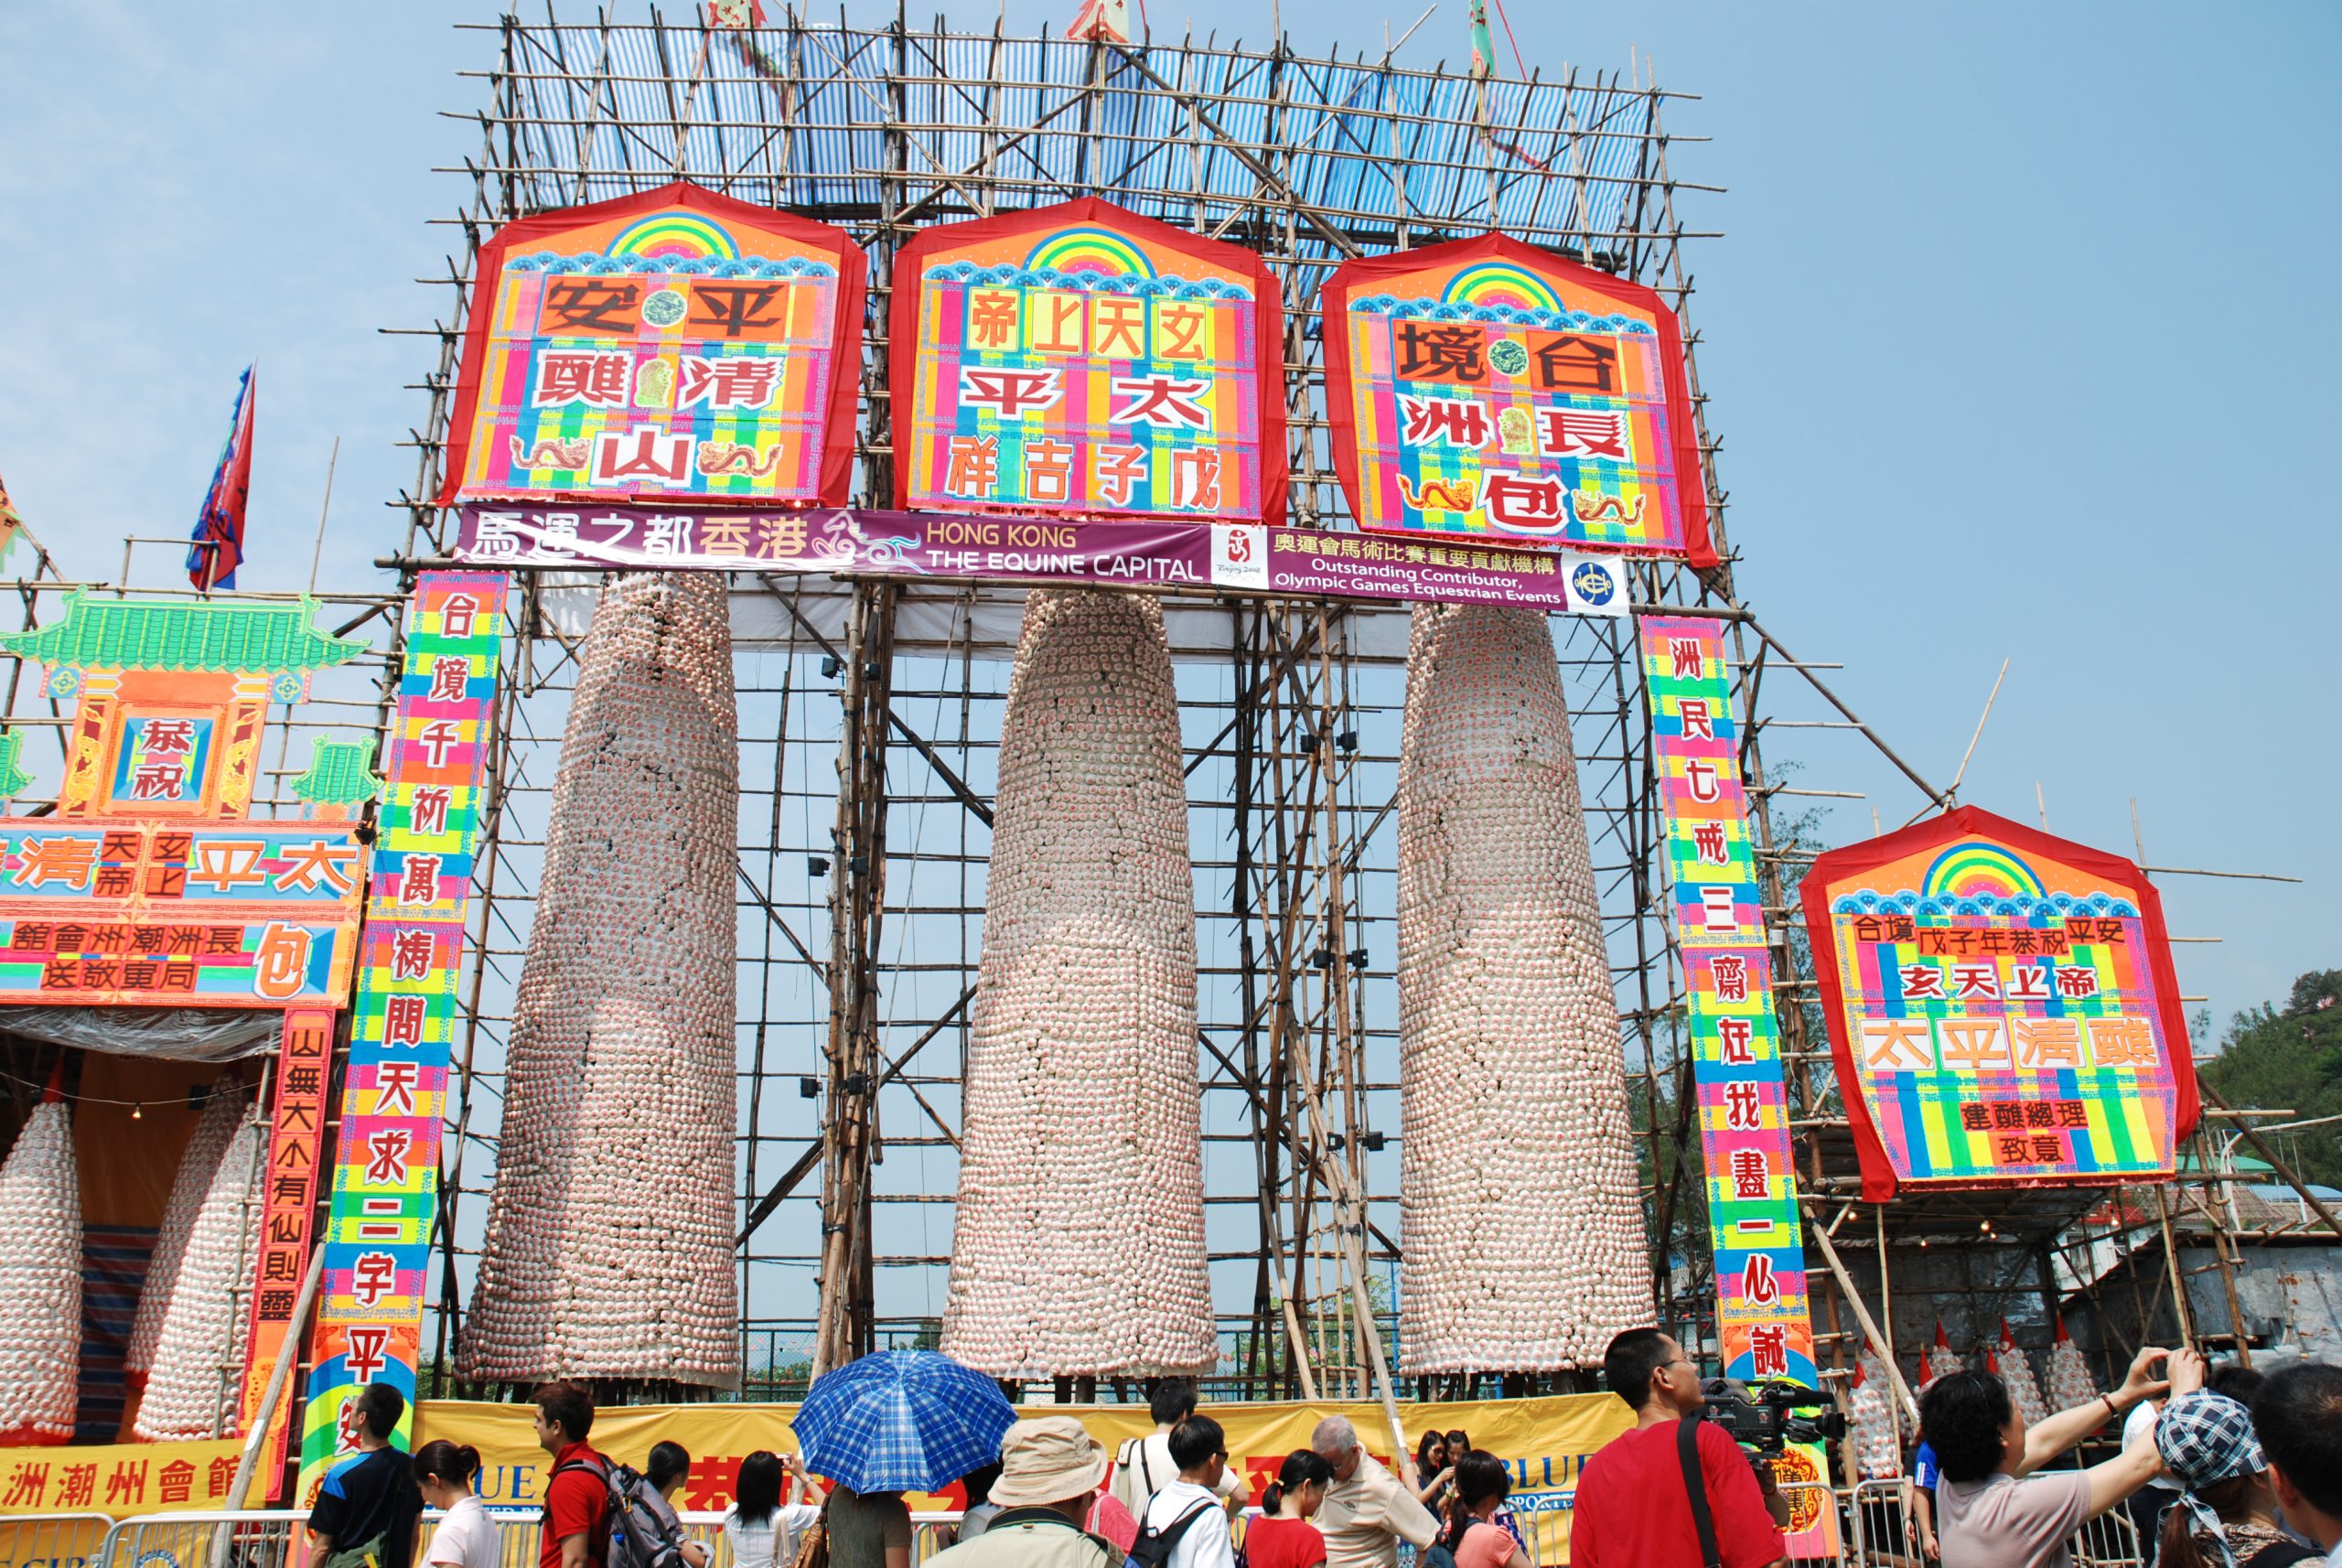 جشنواره چئونگ چائو بون : یکی ازجشنواره های مذهبی در هنگ کنگ است، که در5 مه – 9 مه هر سال برگزار می شود.